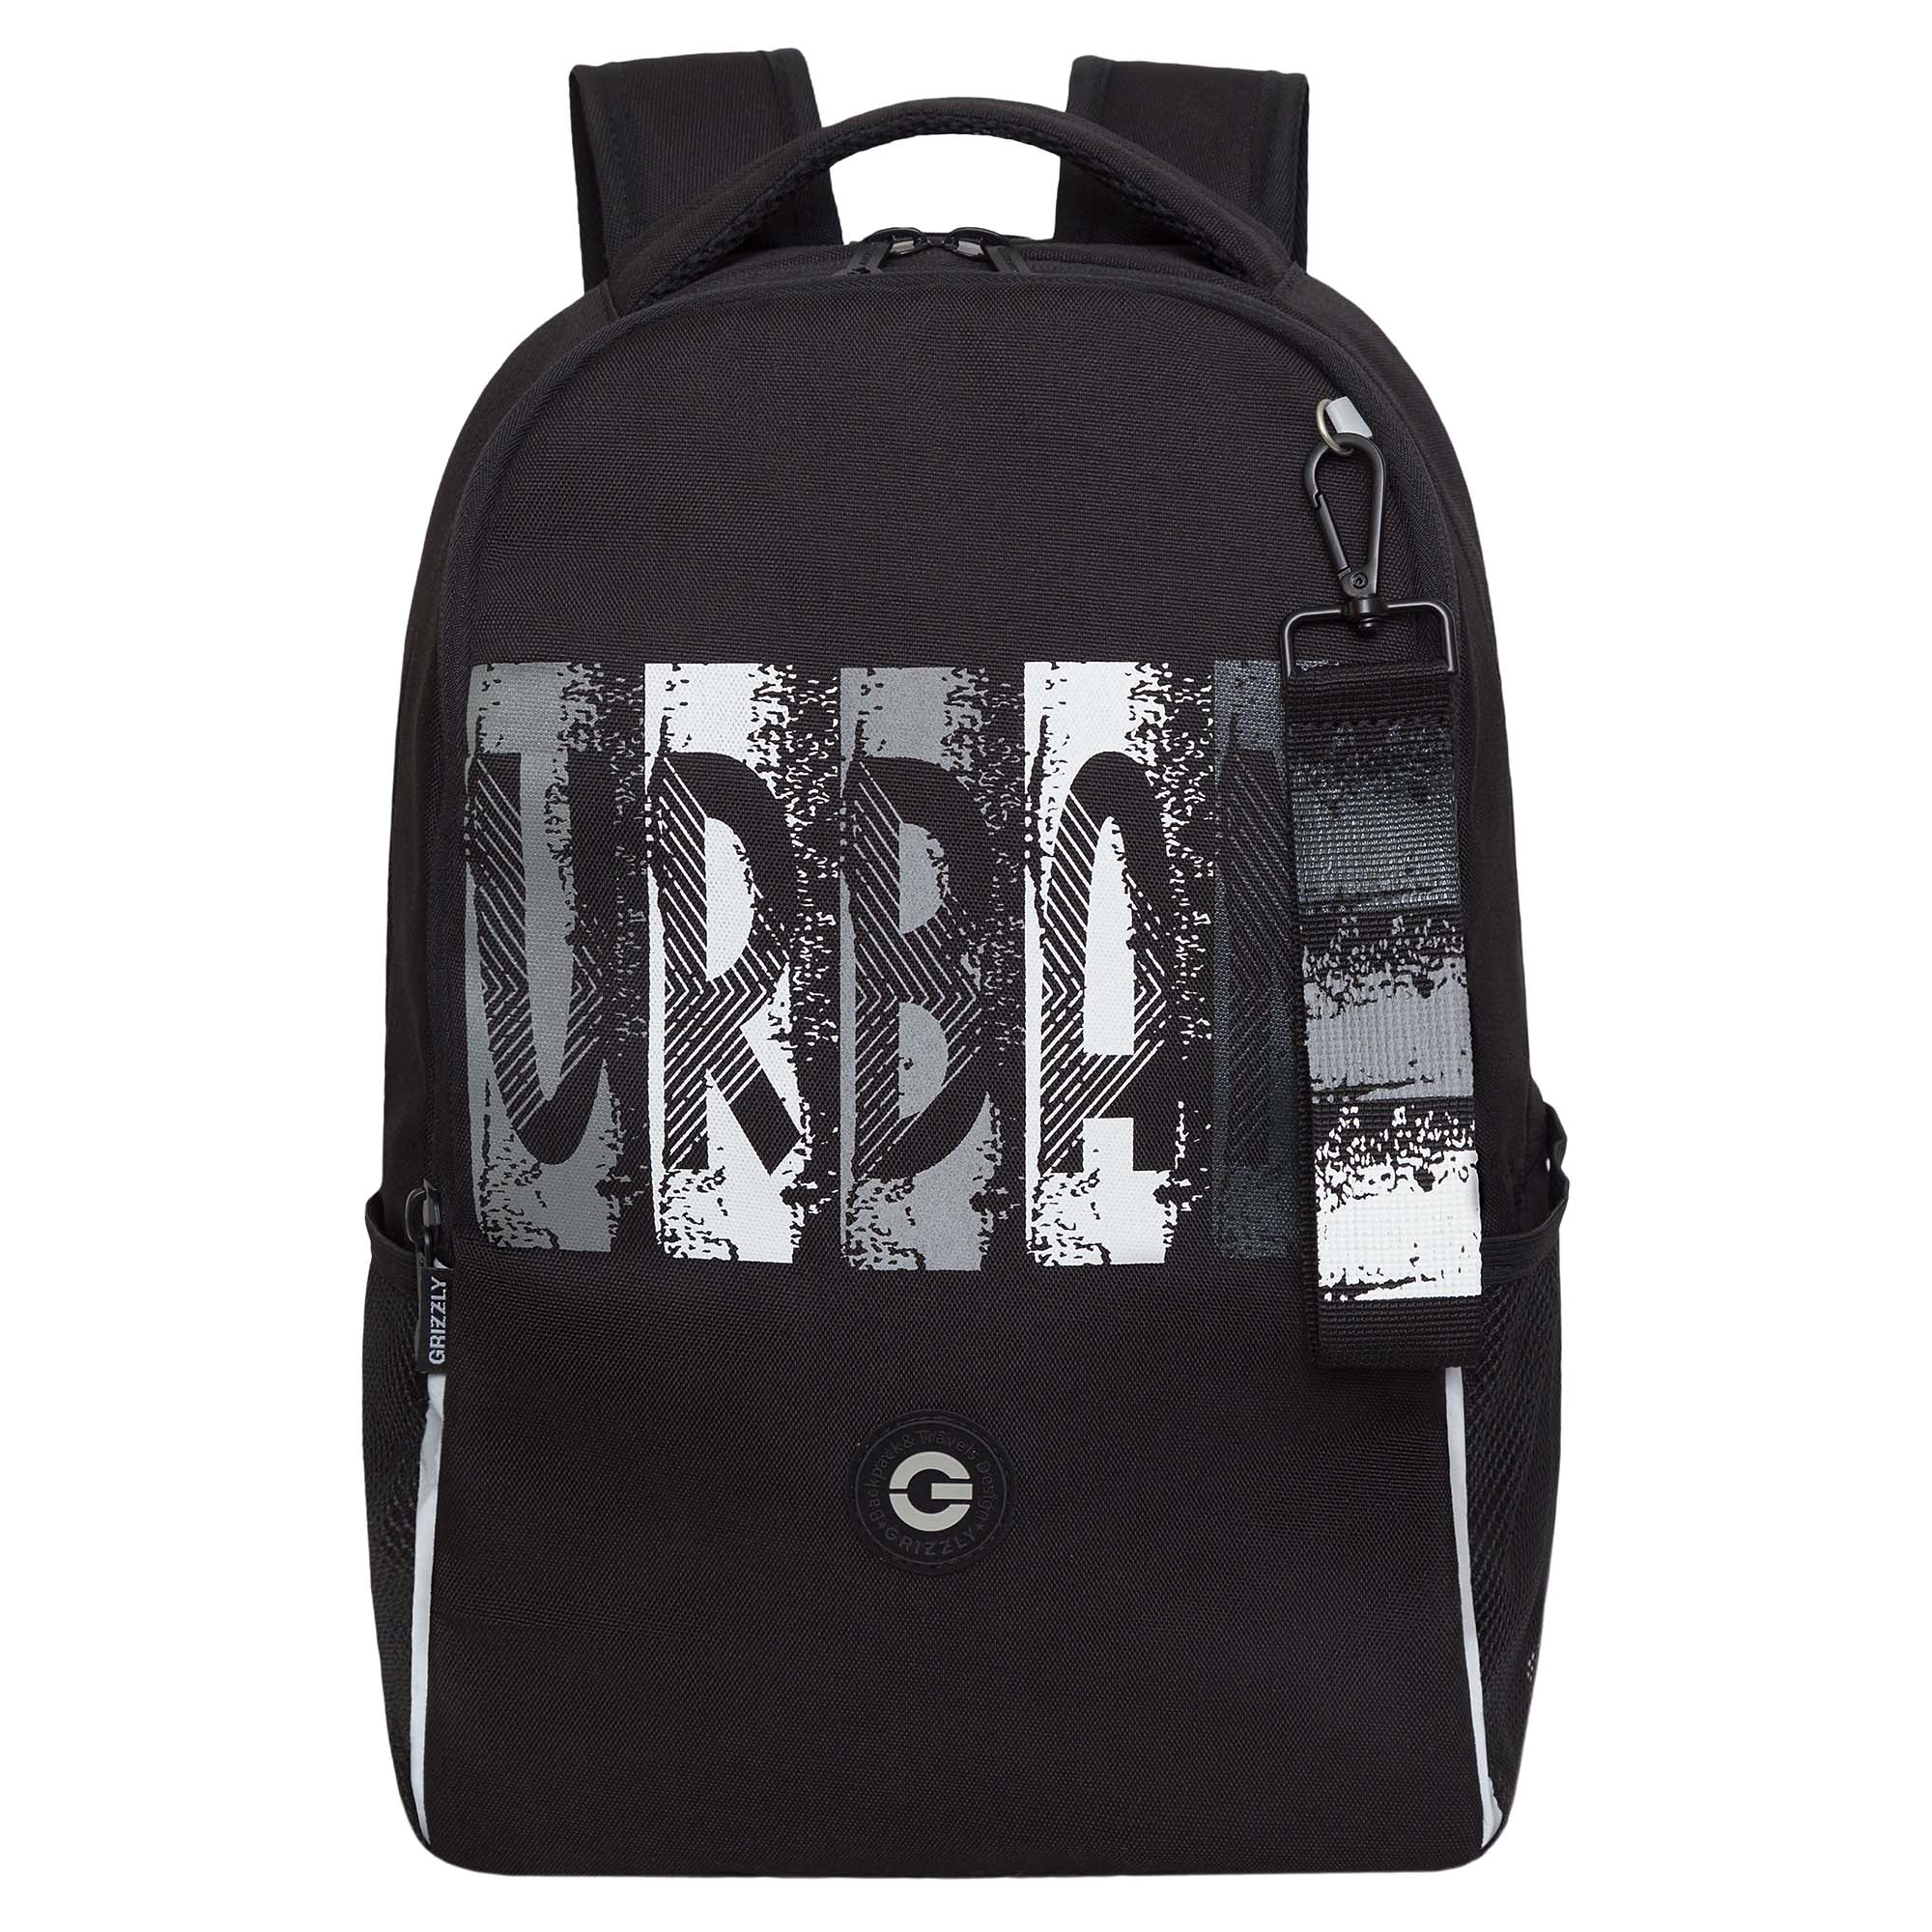 Рюкзак школьный GRIZZLY легкий с жесткой спинкой, 2 отделения, черный; серый, RB-451-3/2